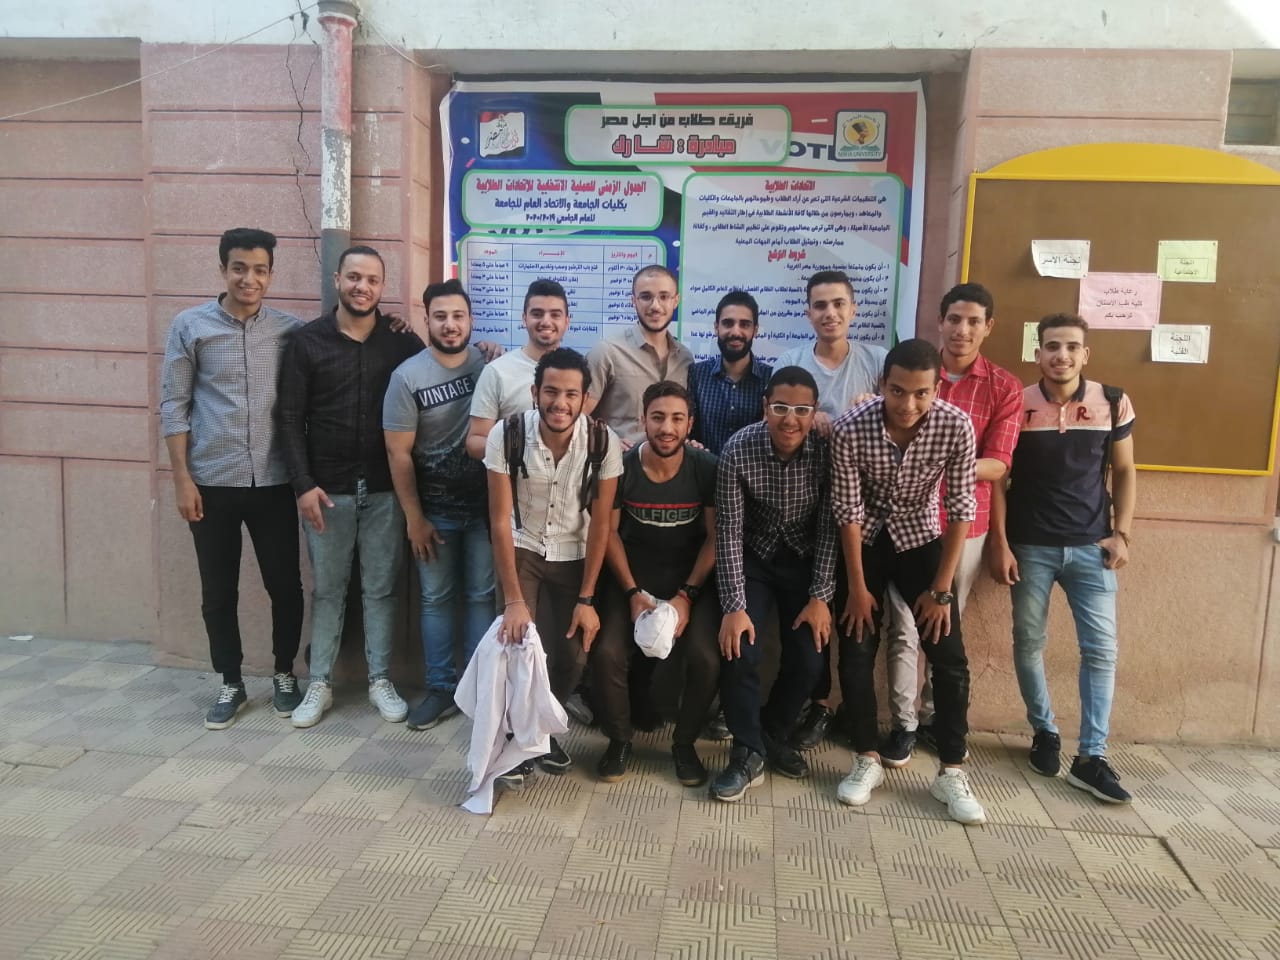 فريق طلاب من أجل مصر بجامعة المنيا يطلق مبادرة شارك للتعريف بالاتحادات الطلابية (11)